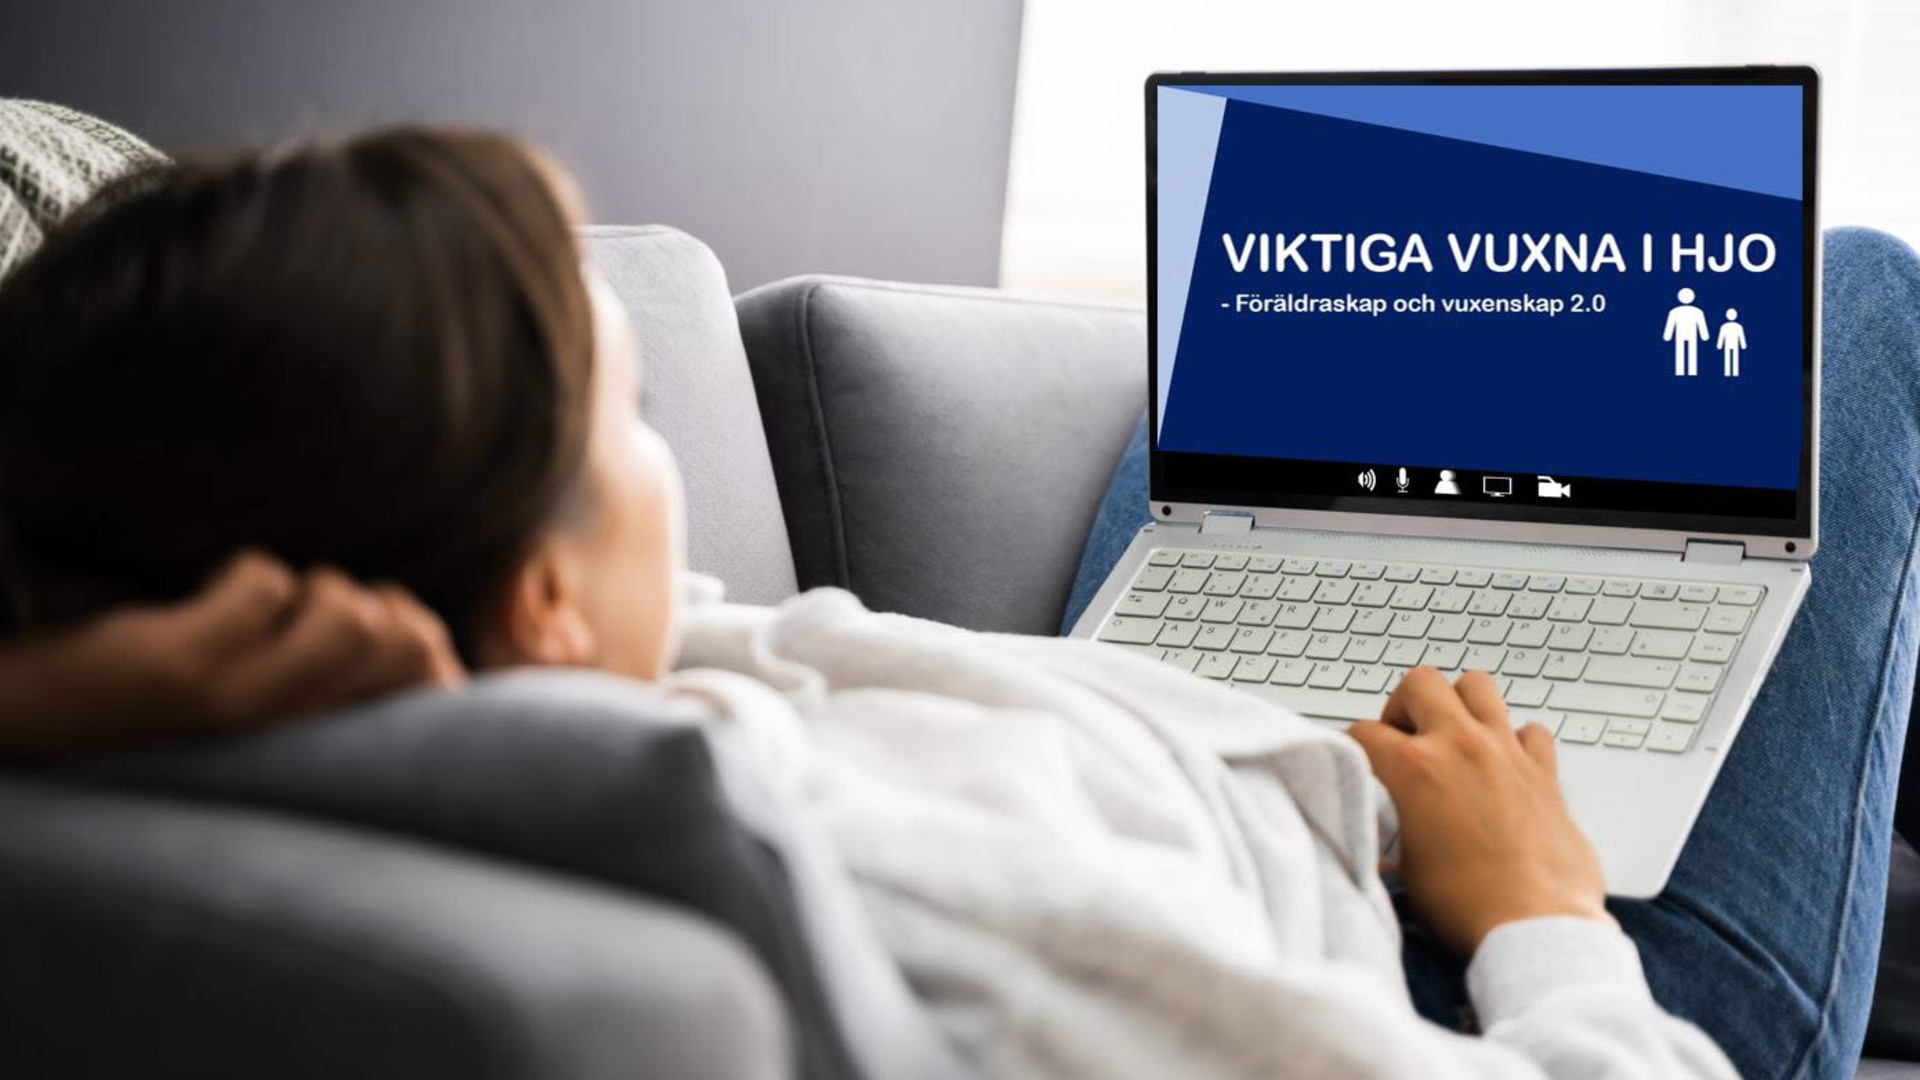 En person som ligger i en soffa och tittar på en dator med texten "Viktiga vuxna i Hjo".